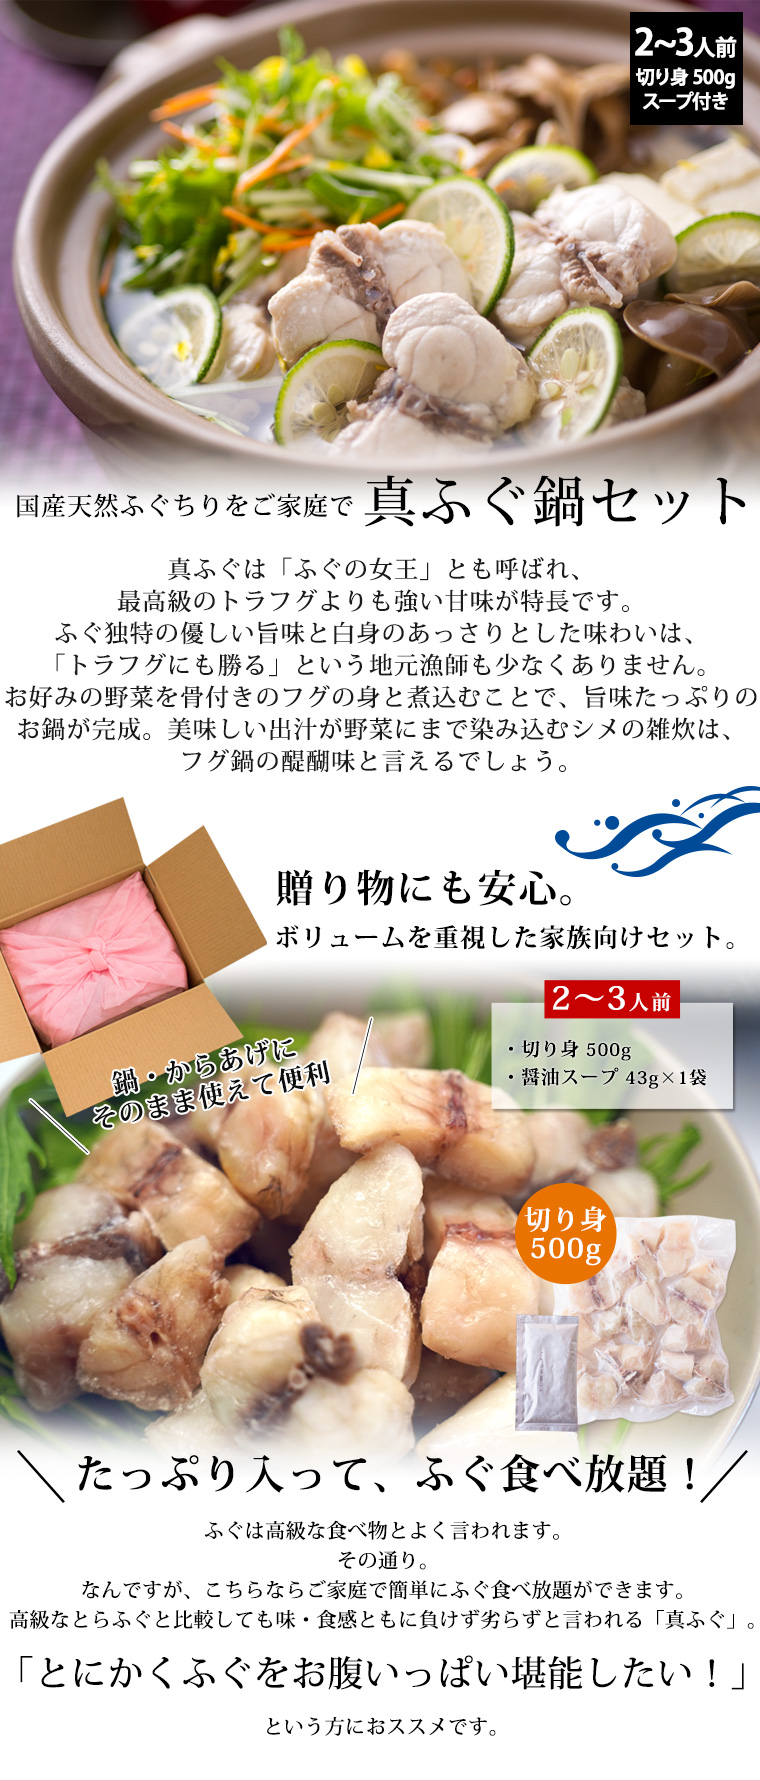 とらふぐ フルコース 九州の老 鍋のシメに中間市産米麺付